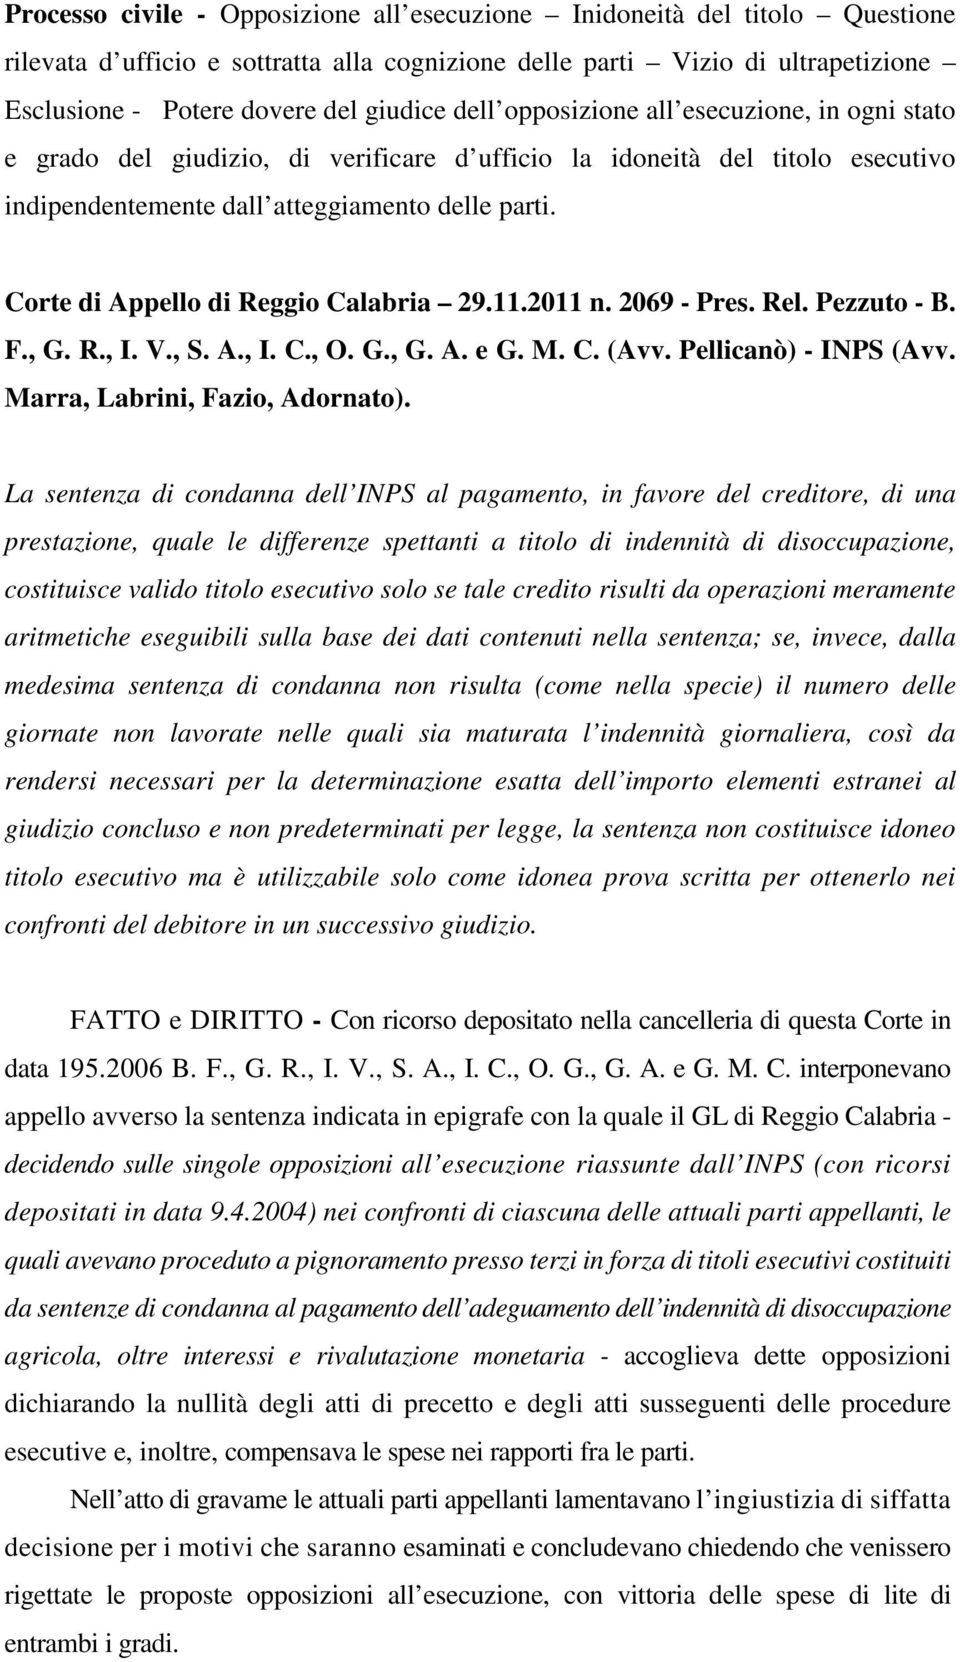 Corte di Appello di Reggio Calabria 29.11.2011 n. 2069 - Pres. Rel. Pezzuto - B. F., G. R., I. V., S. A., I. C., O. G., G. A. e G. M. C. (Avv. Pellicanò) - INPS (Avv. Marra, Labrini, Fazio, Adornato).